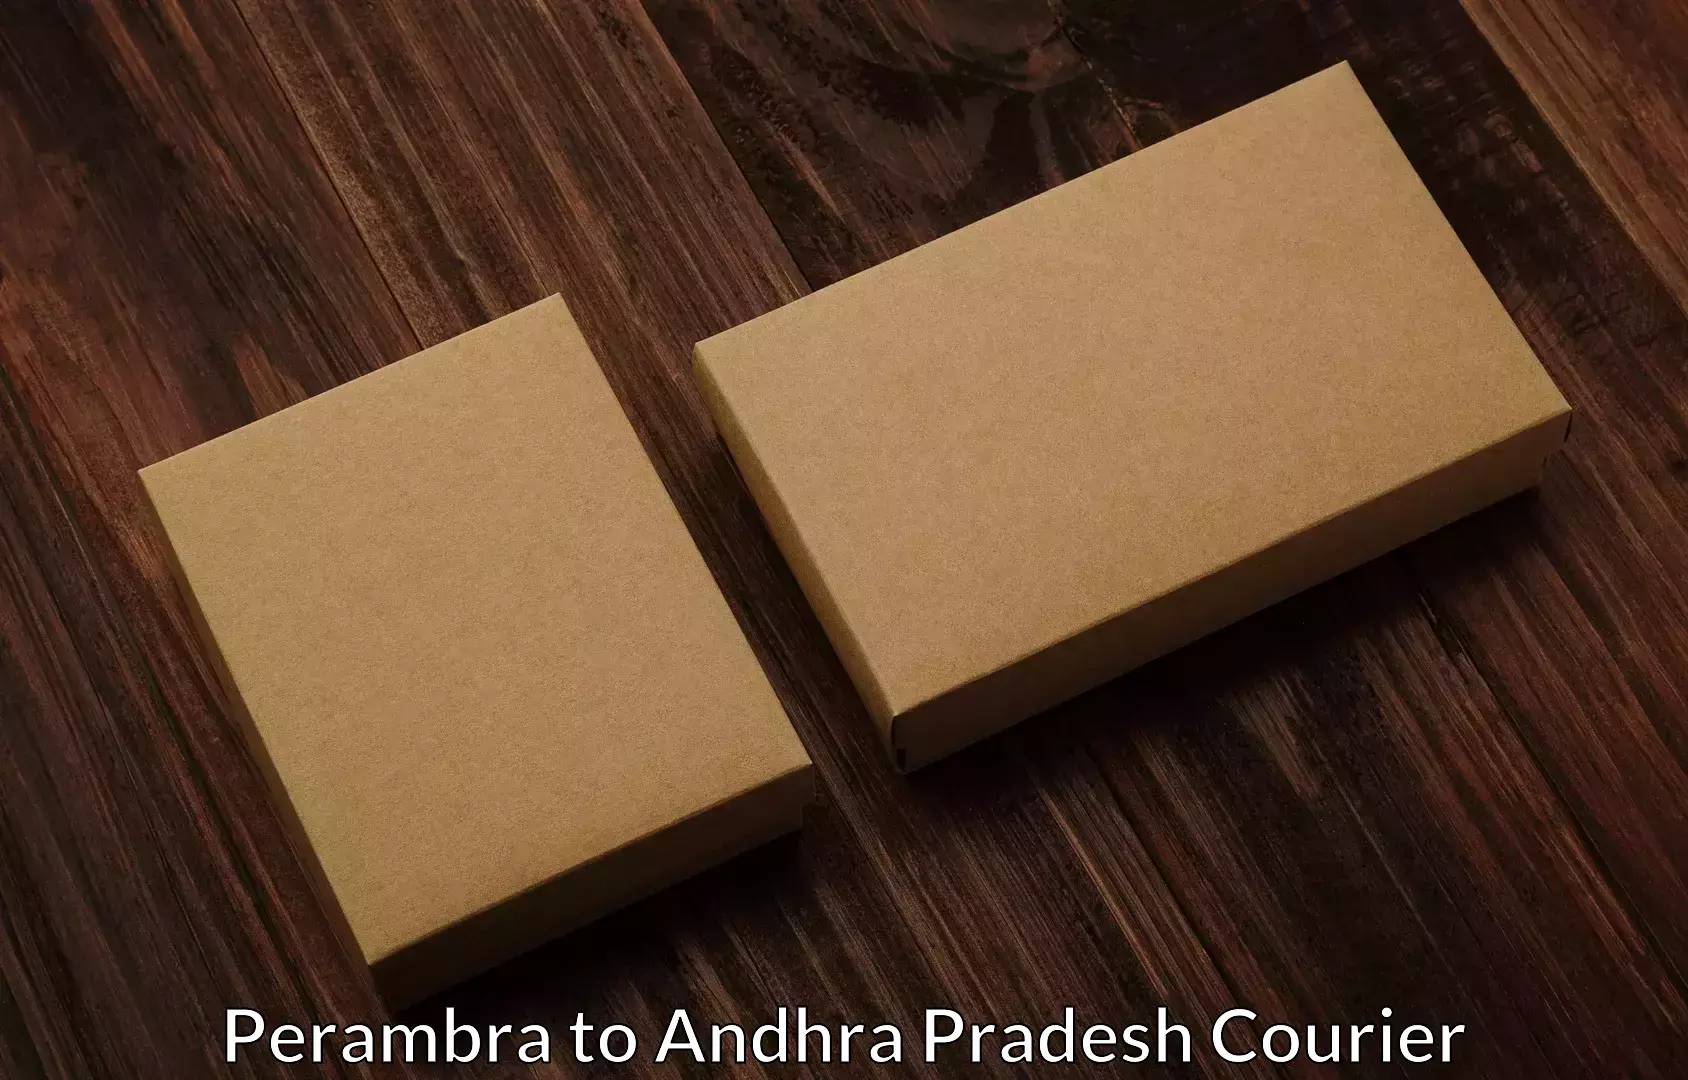 Furniture transport company Perambra to Tirupati